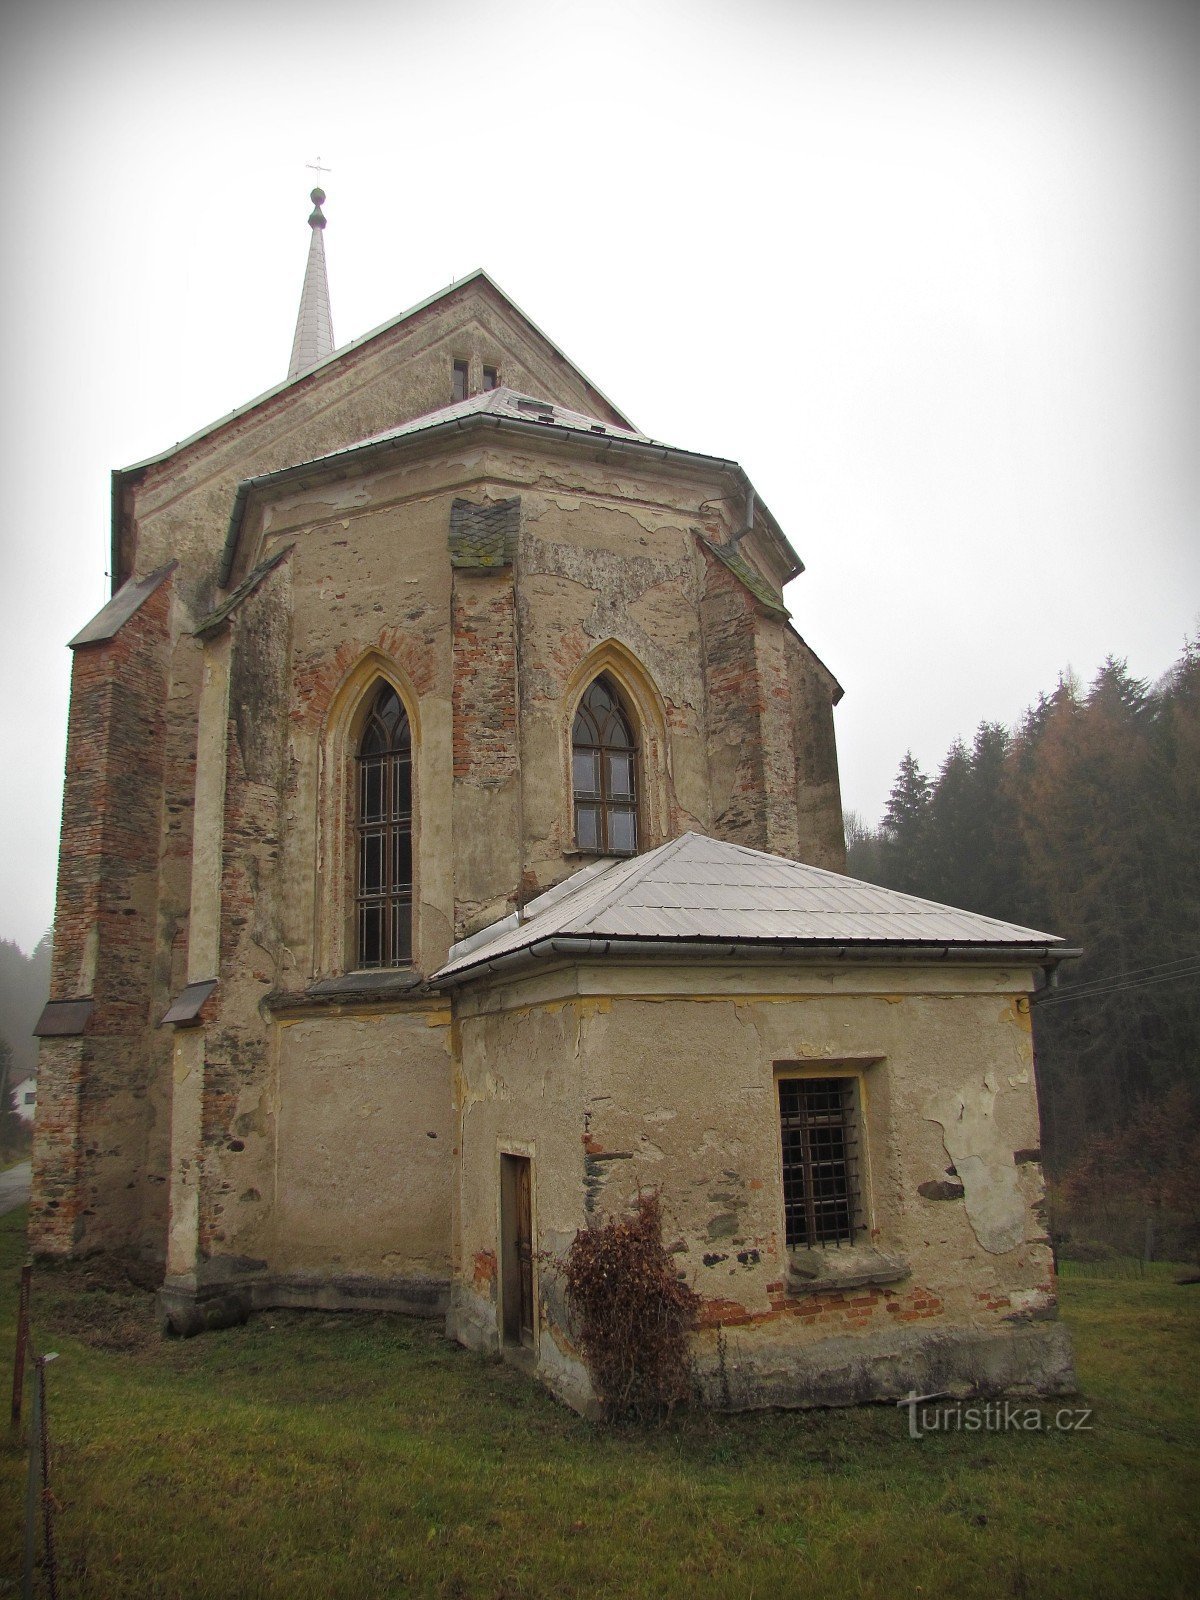 ベドリコフの聖ベドリッチ教会